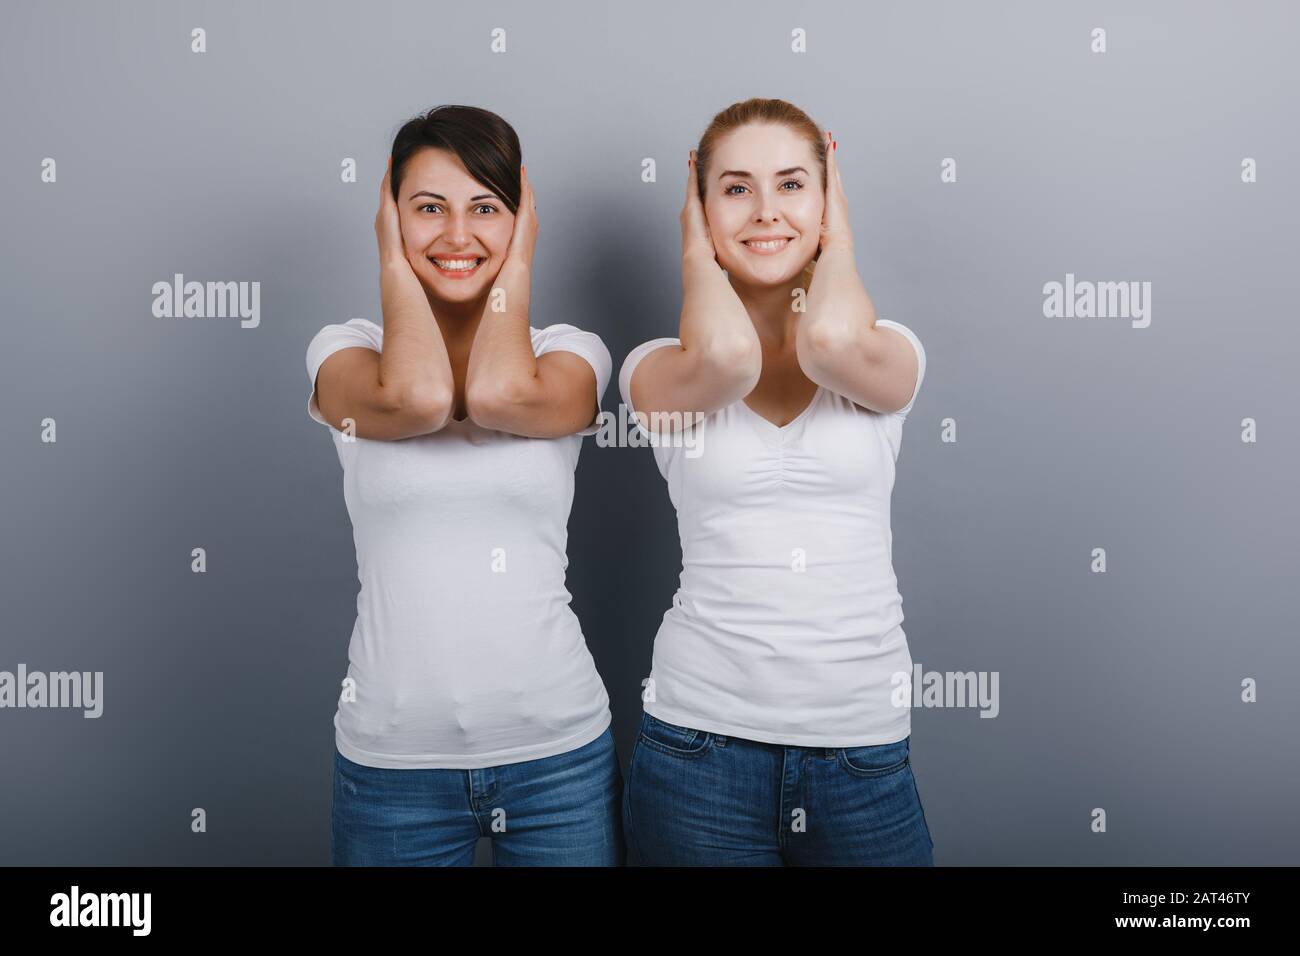 Dos amigos mujeres posando en el estudio cerrando oídos con brazos. Concepto de gestuing - Imagen Foto de stock